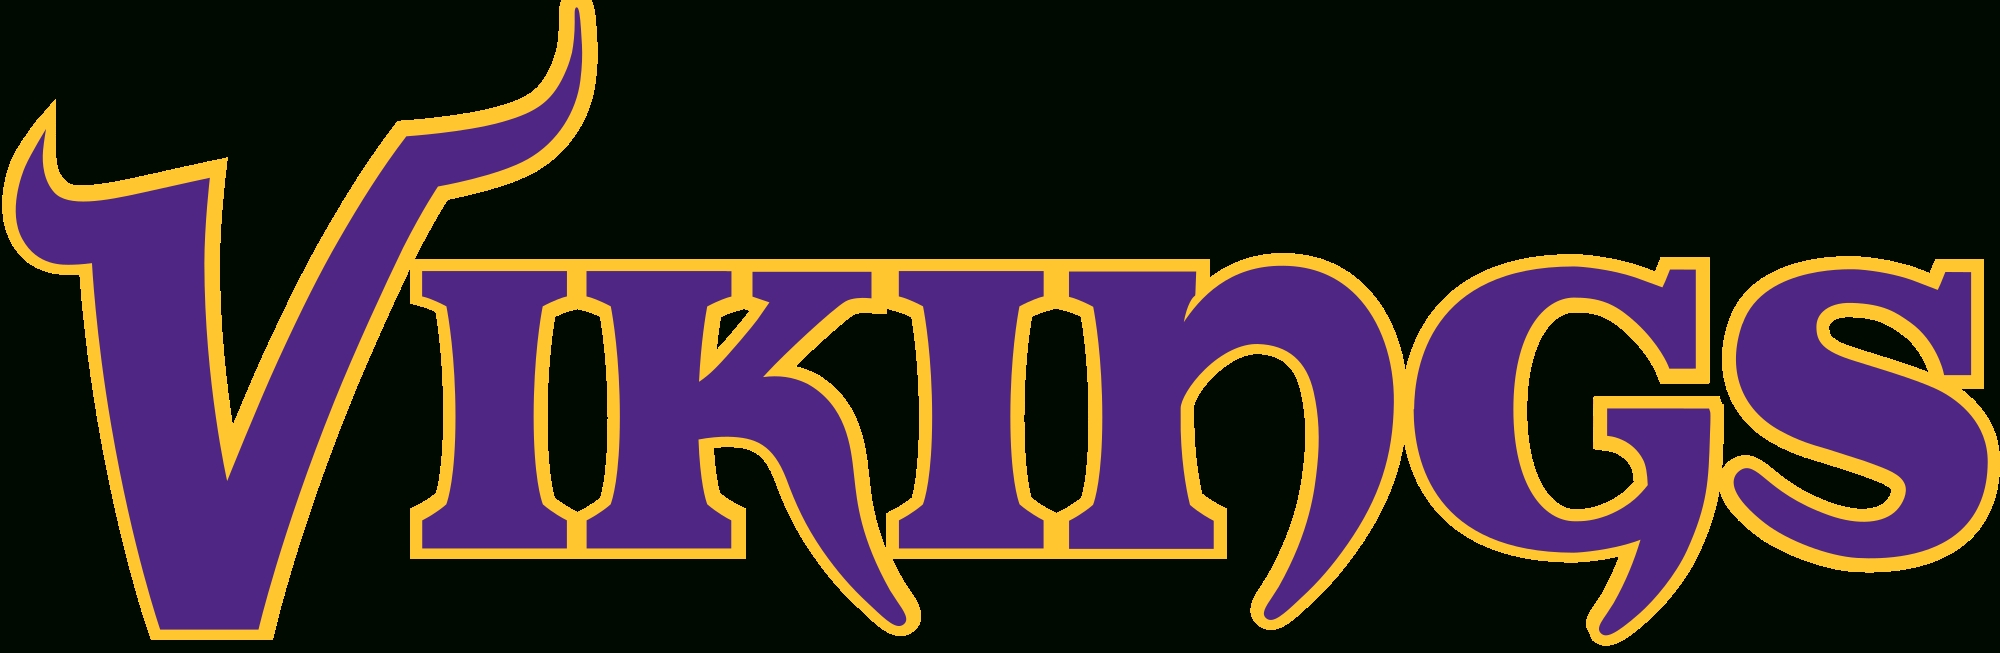 10 Best Minnesota Vikings Pics Logo FULL HD 1920×1080 For PC Desktop 2024